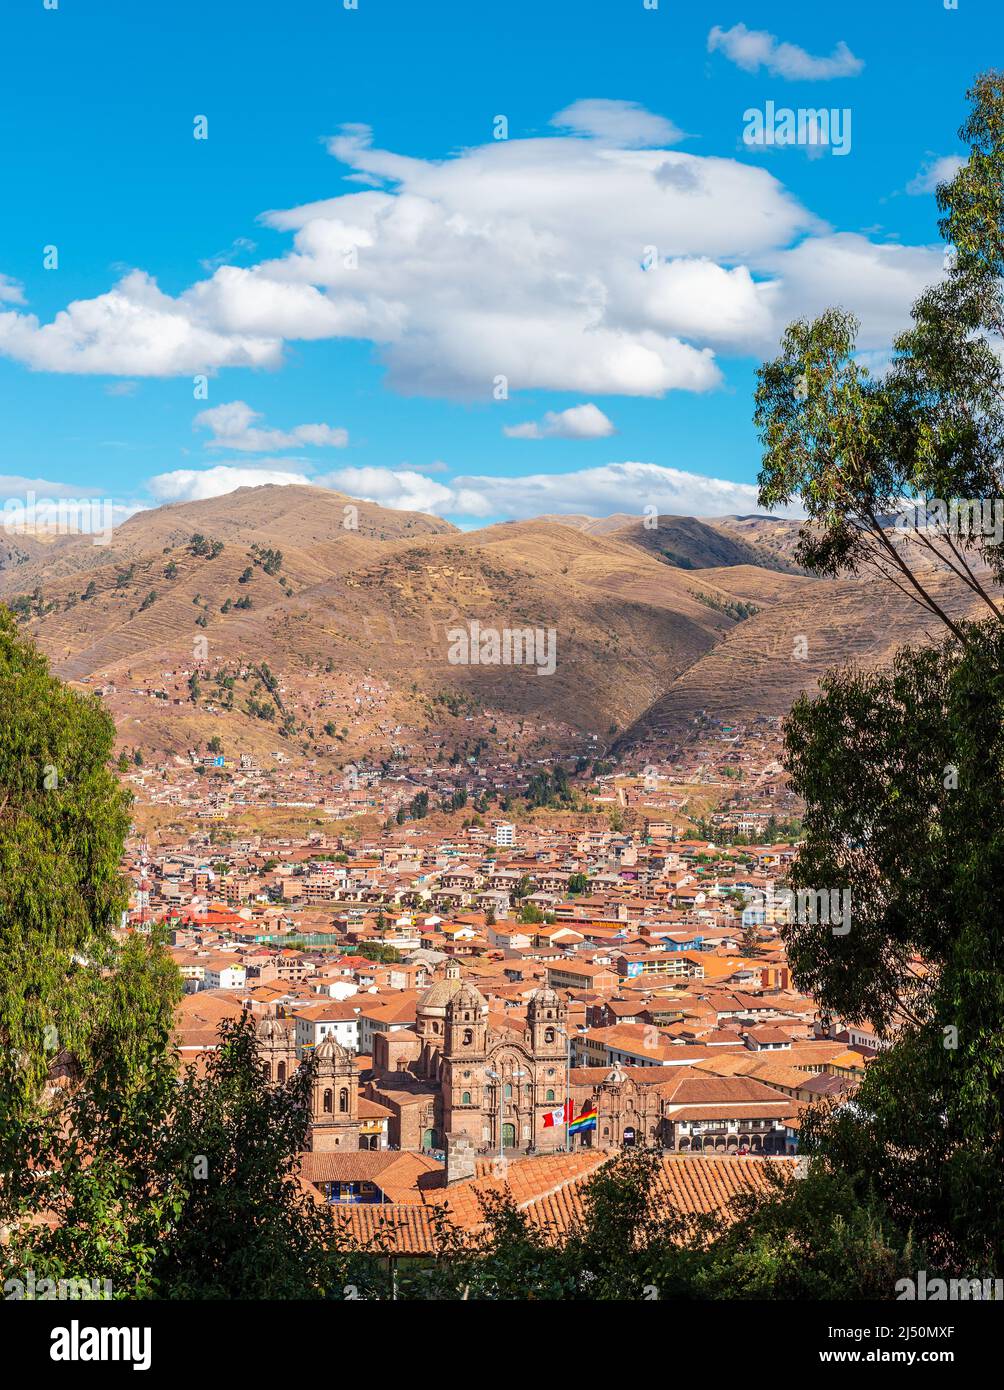 Horizonte aéreo vertical de la antigua capital inca Cusco con la iglesia de la Compañía de Jesús y la Plaza de Armas, provincia de Cusco, Perú. Foto de stock